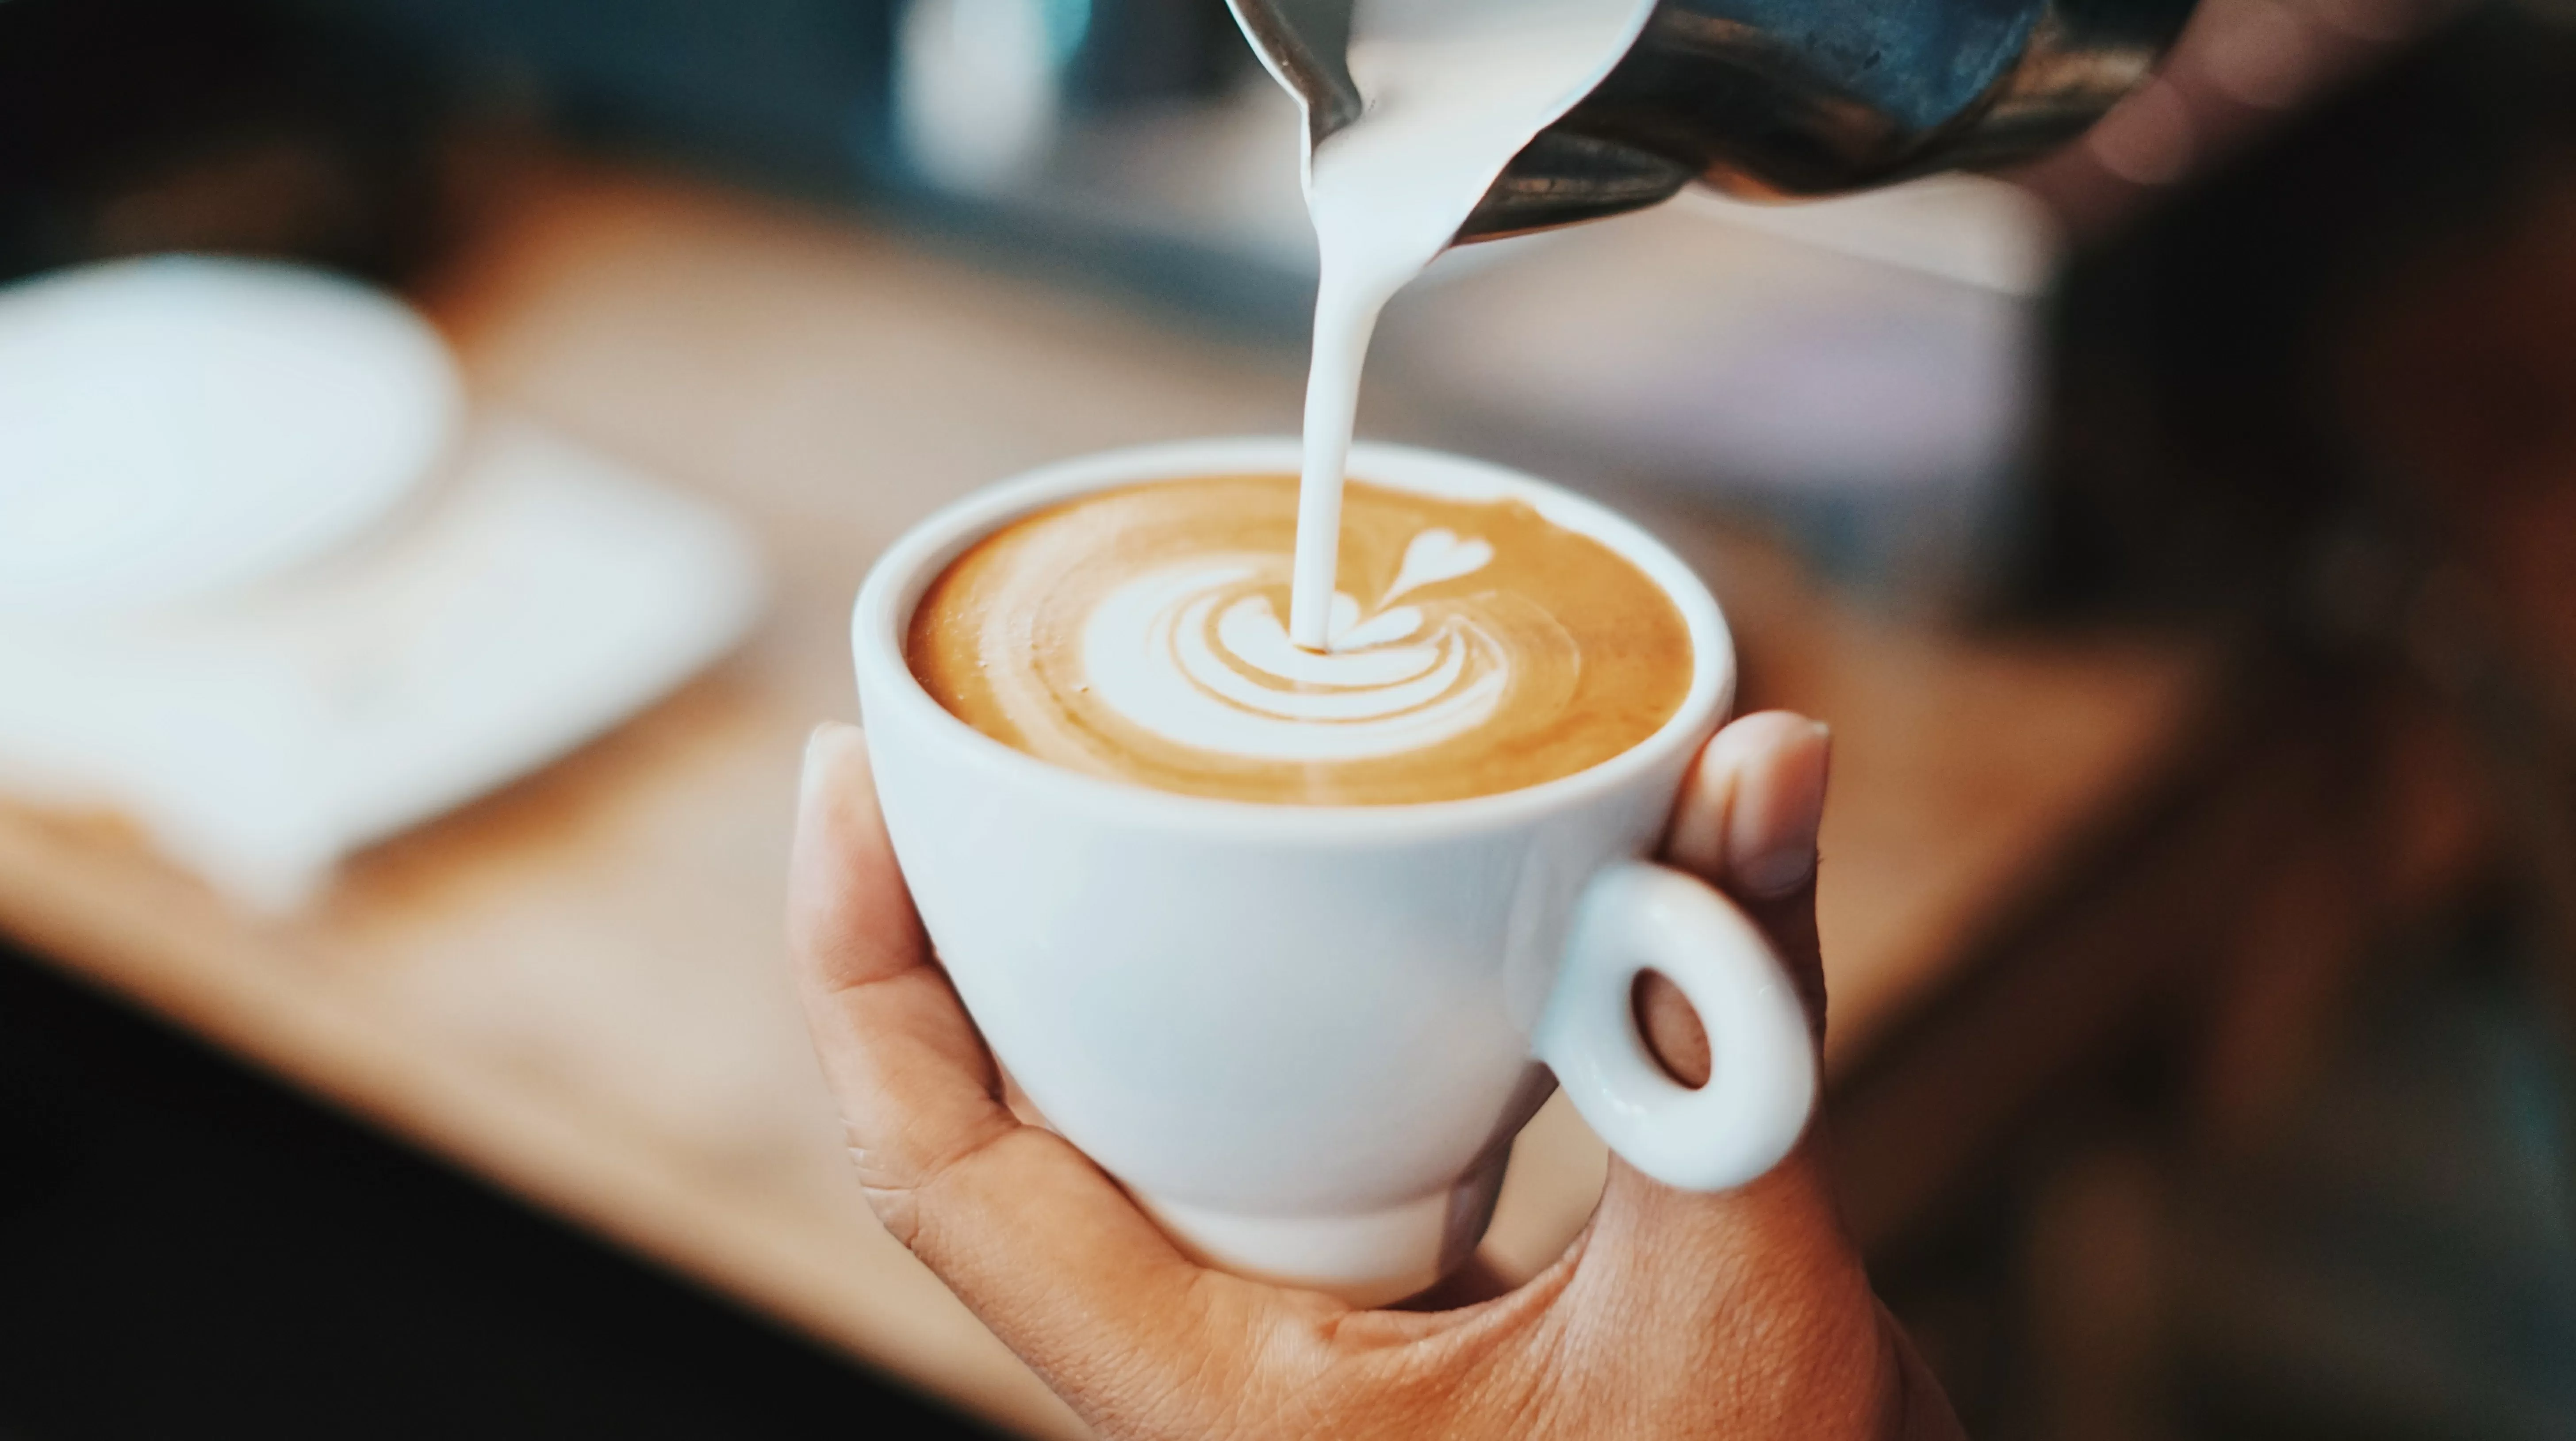 Il caffè latte: benefici e conseguenze sul corpo